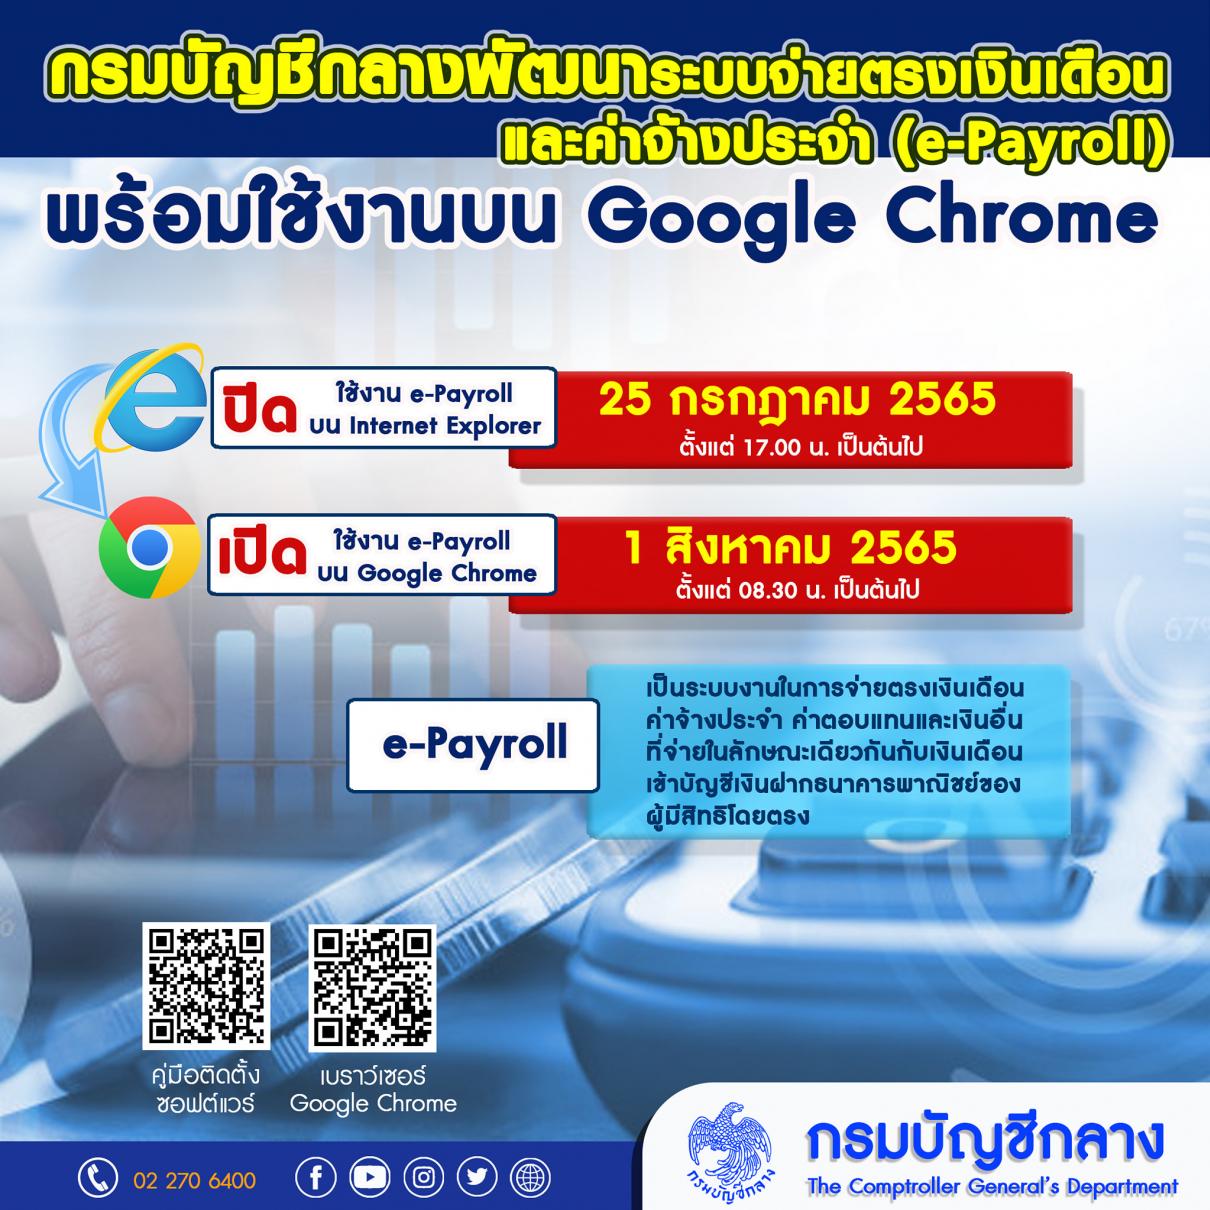 กรมบัญชีกลางพัฒนาระบบจ่ายตรงเงินเดือนและค่าจ้างประจำ (e-Payroll) พร้อมใช้งานบน Google Chrome ตั้งแต่ 1 ส.ค. 65 เป็นต้นไป